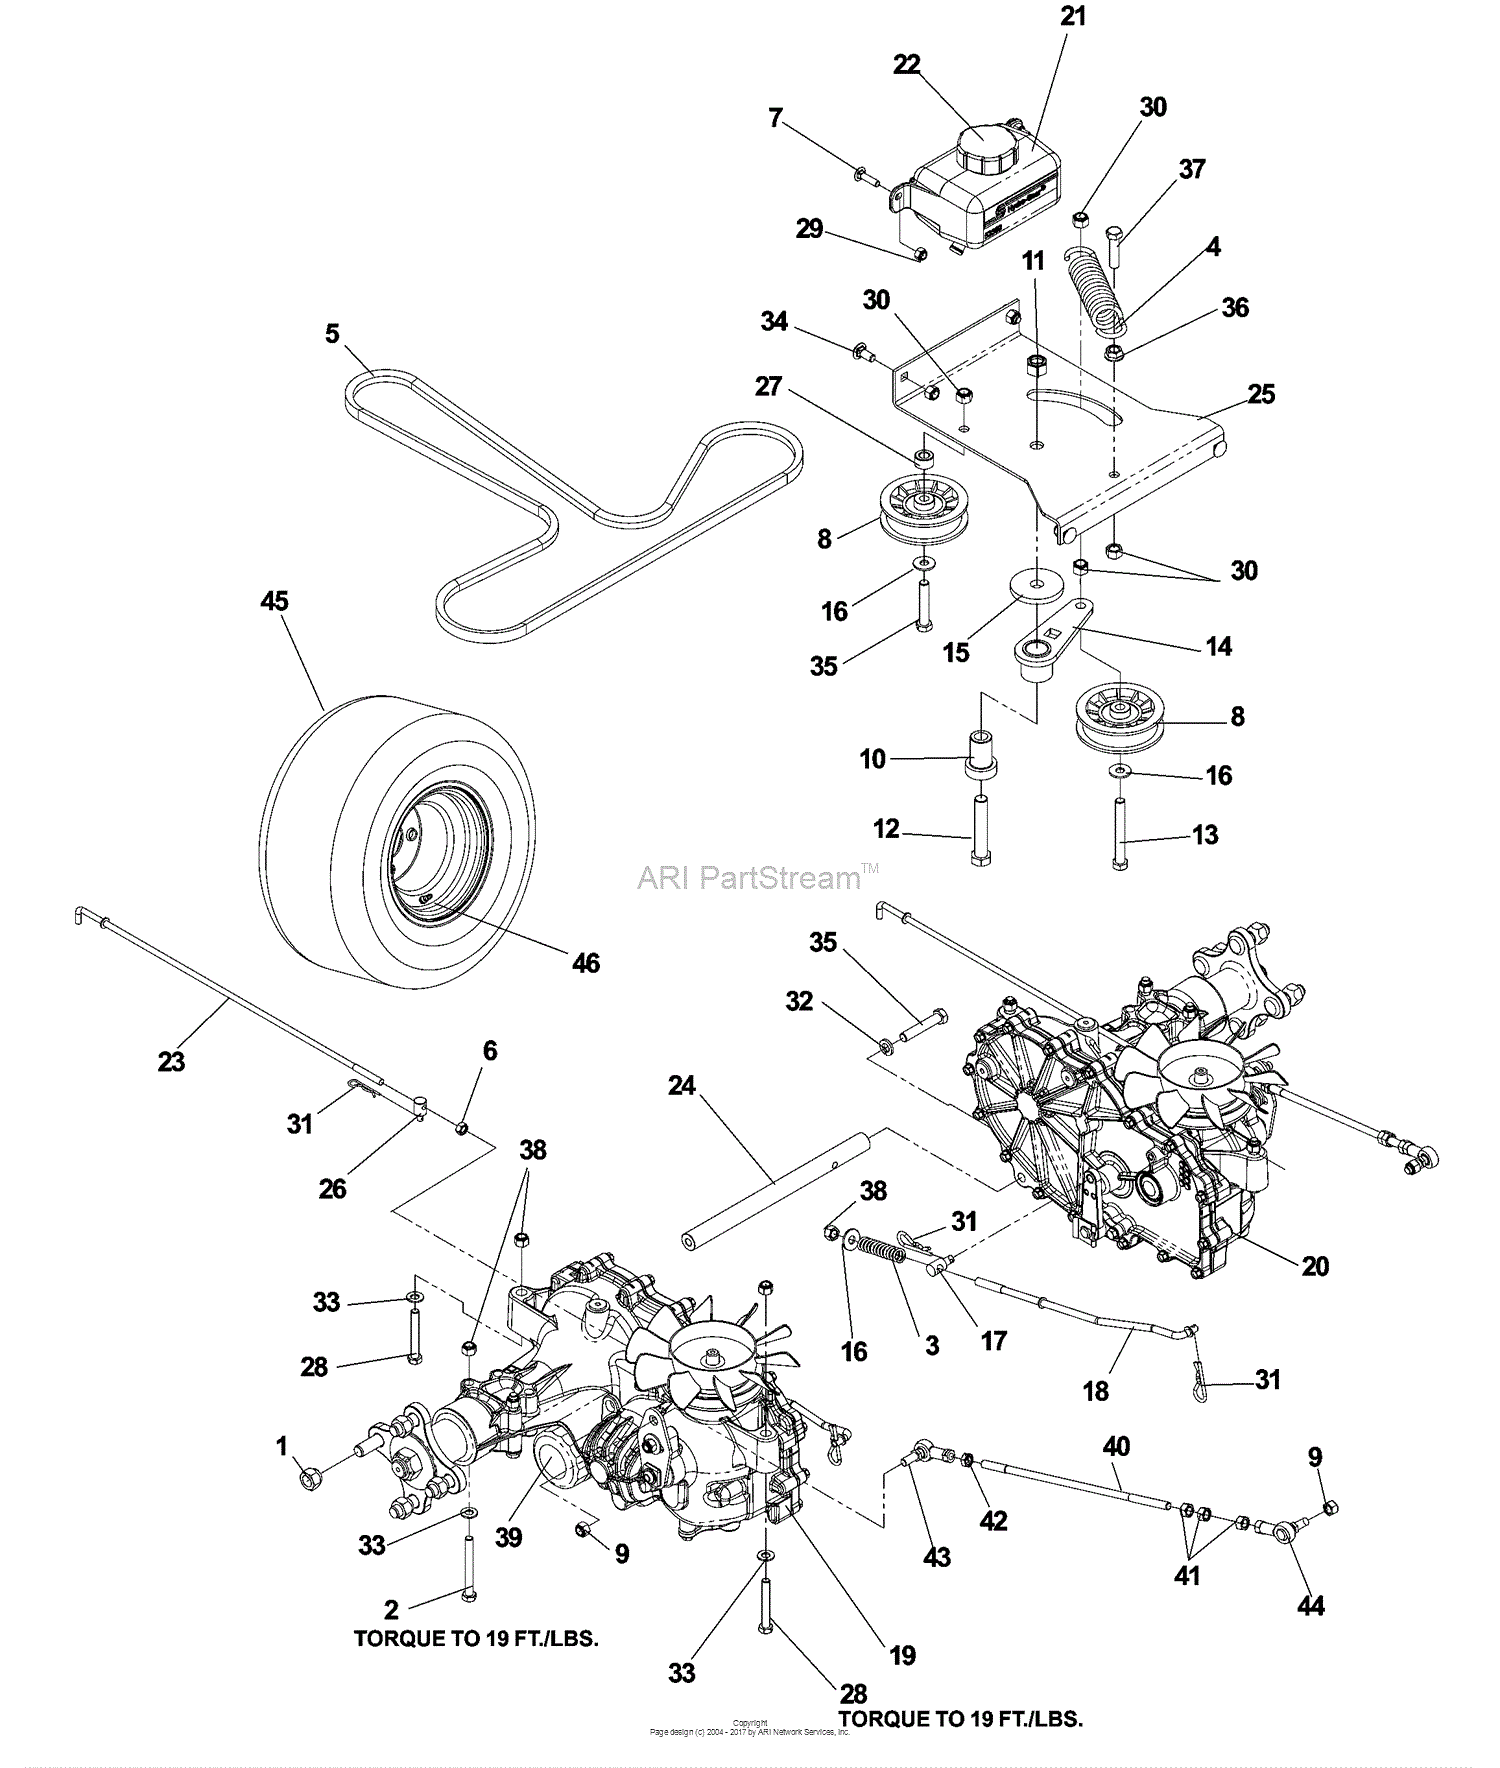 Dixon RAM MAG 50 20 KOHLER - 968999563 (2007) Parts ... dixon ram 50 belt diagram 